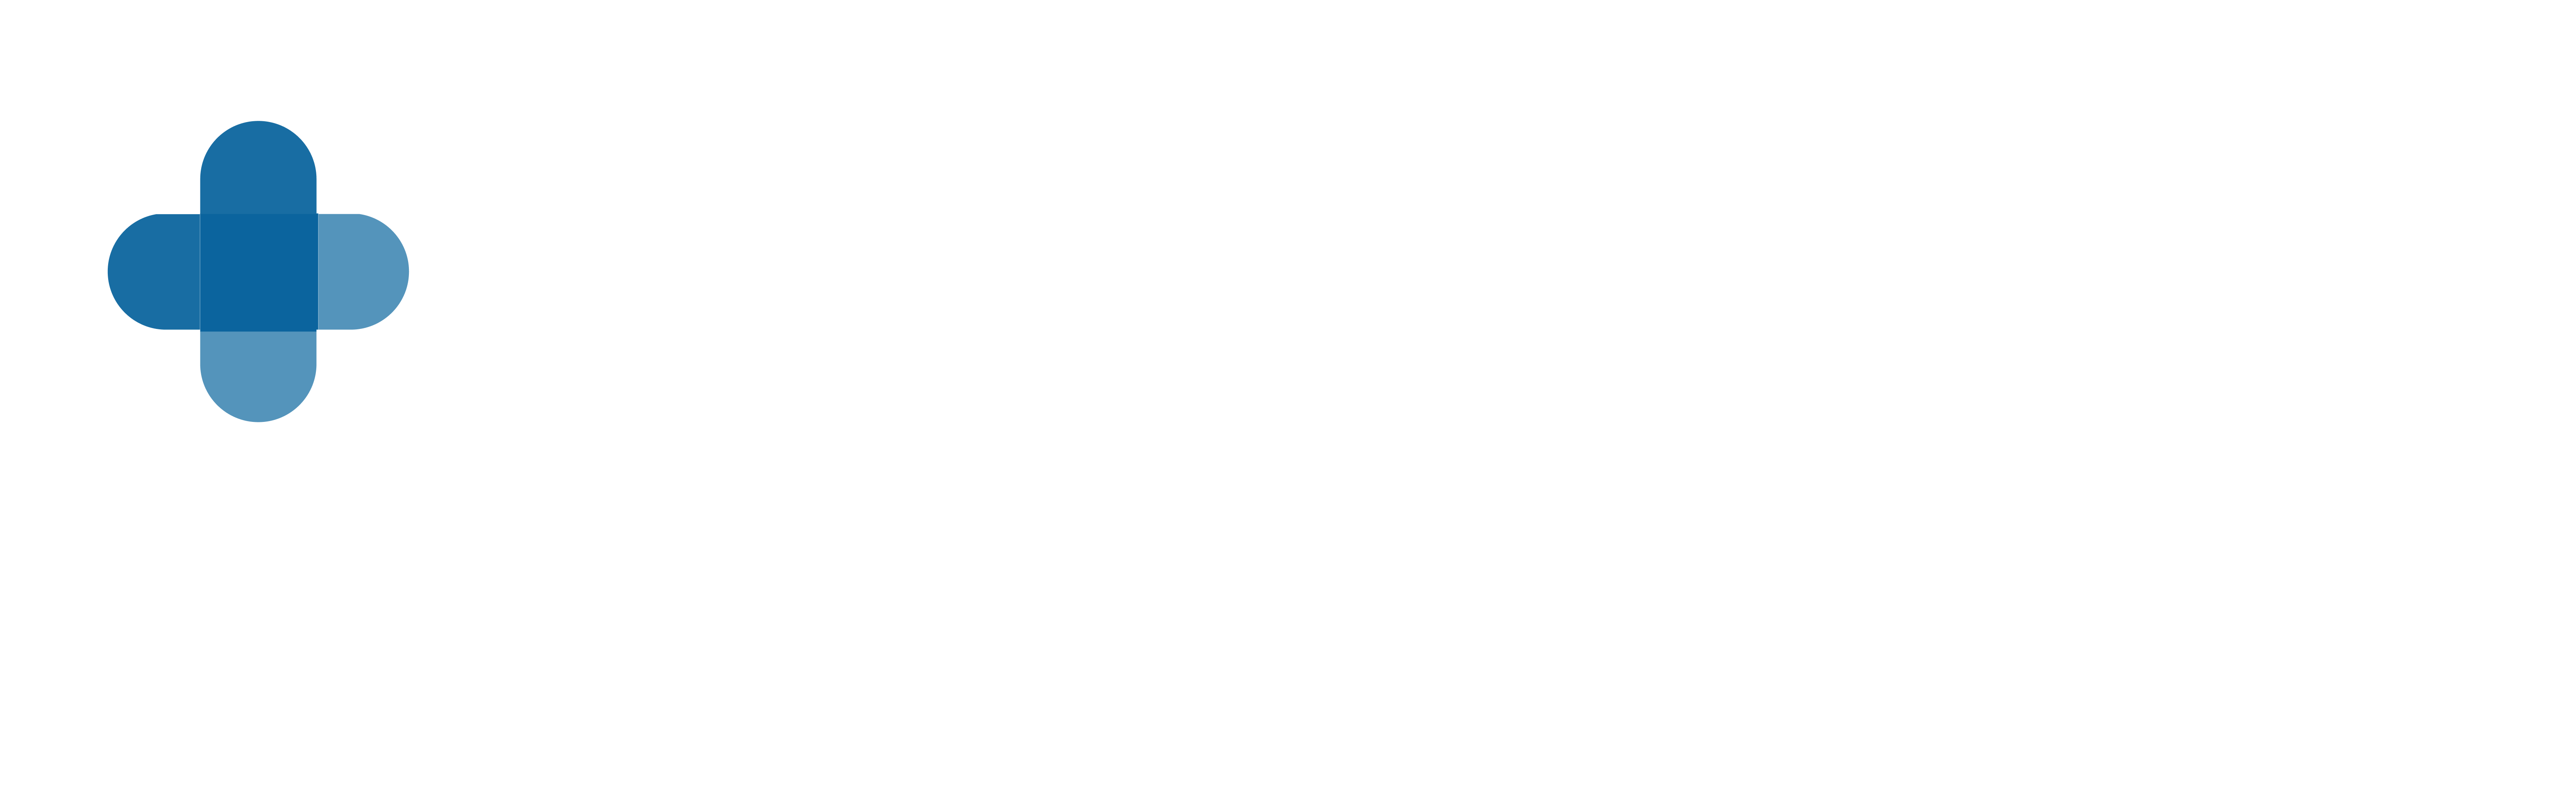 logo_blanco_color2